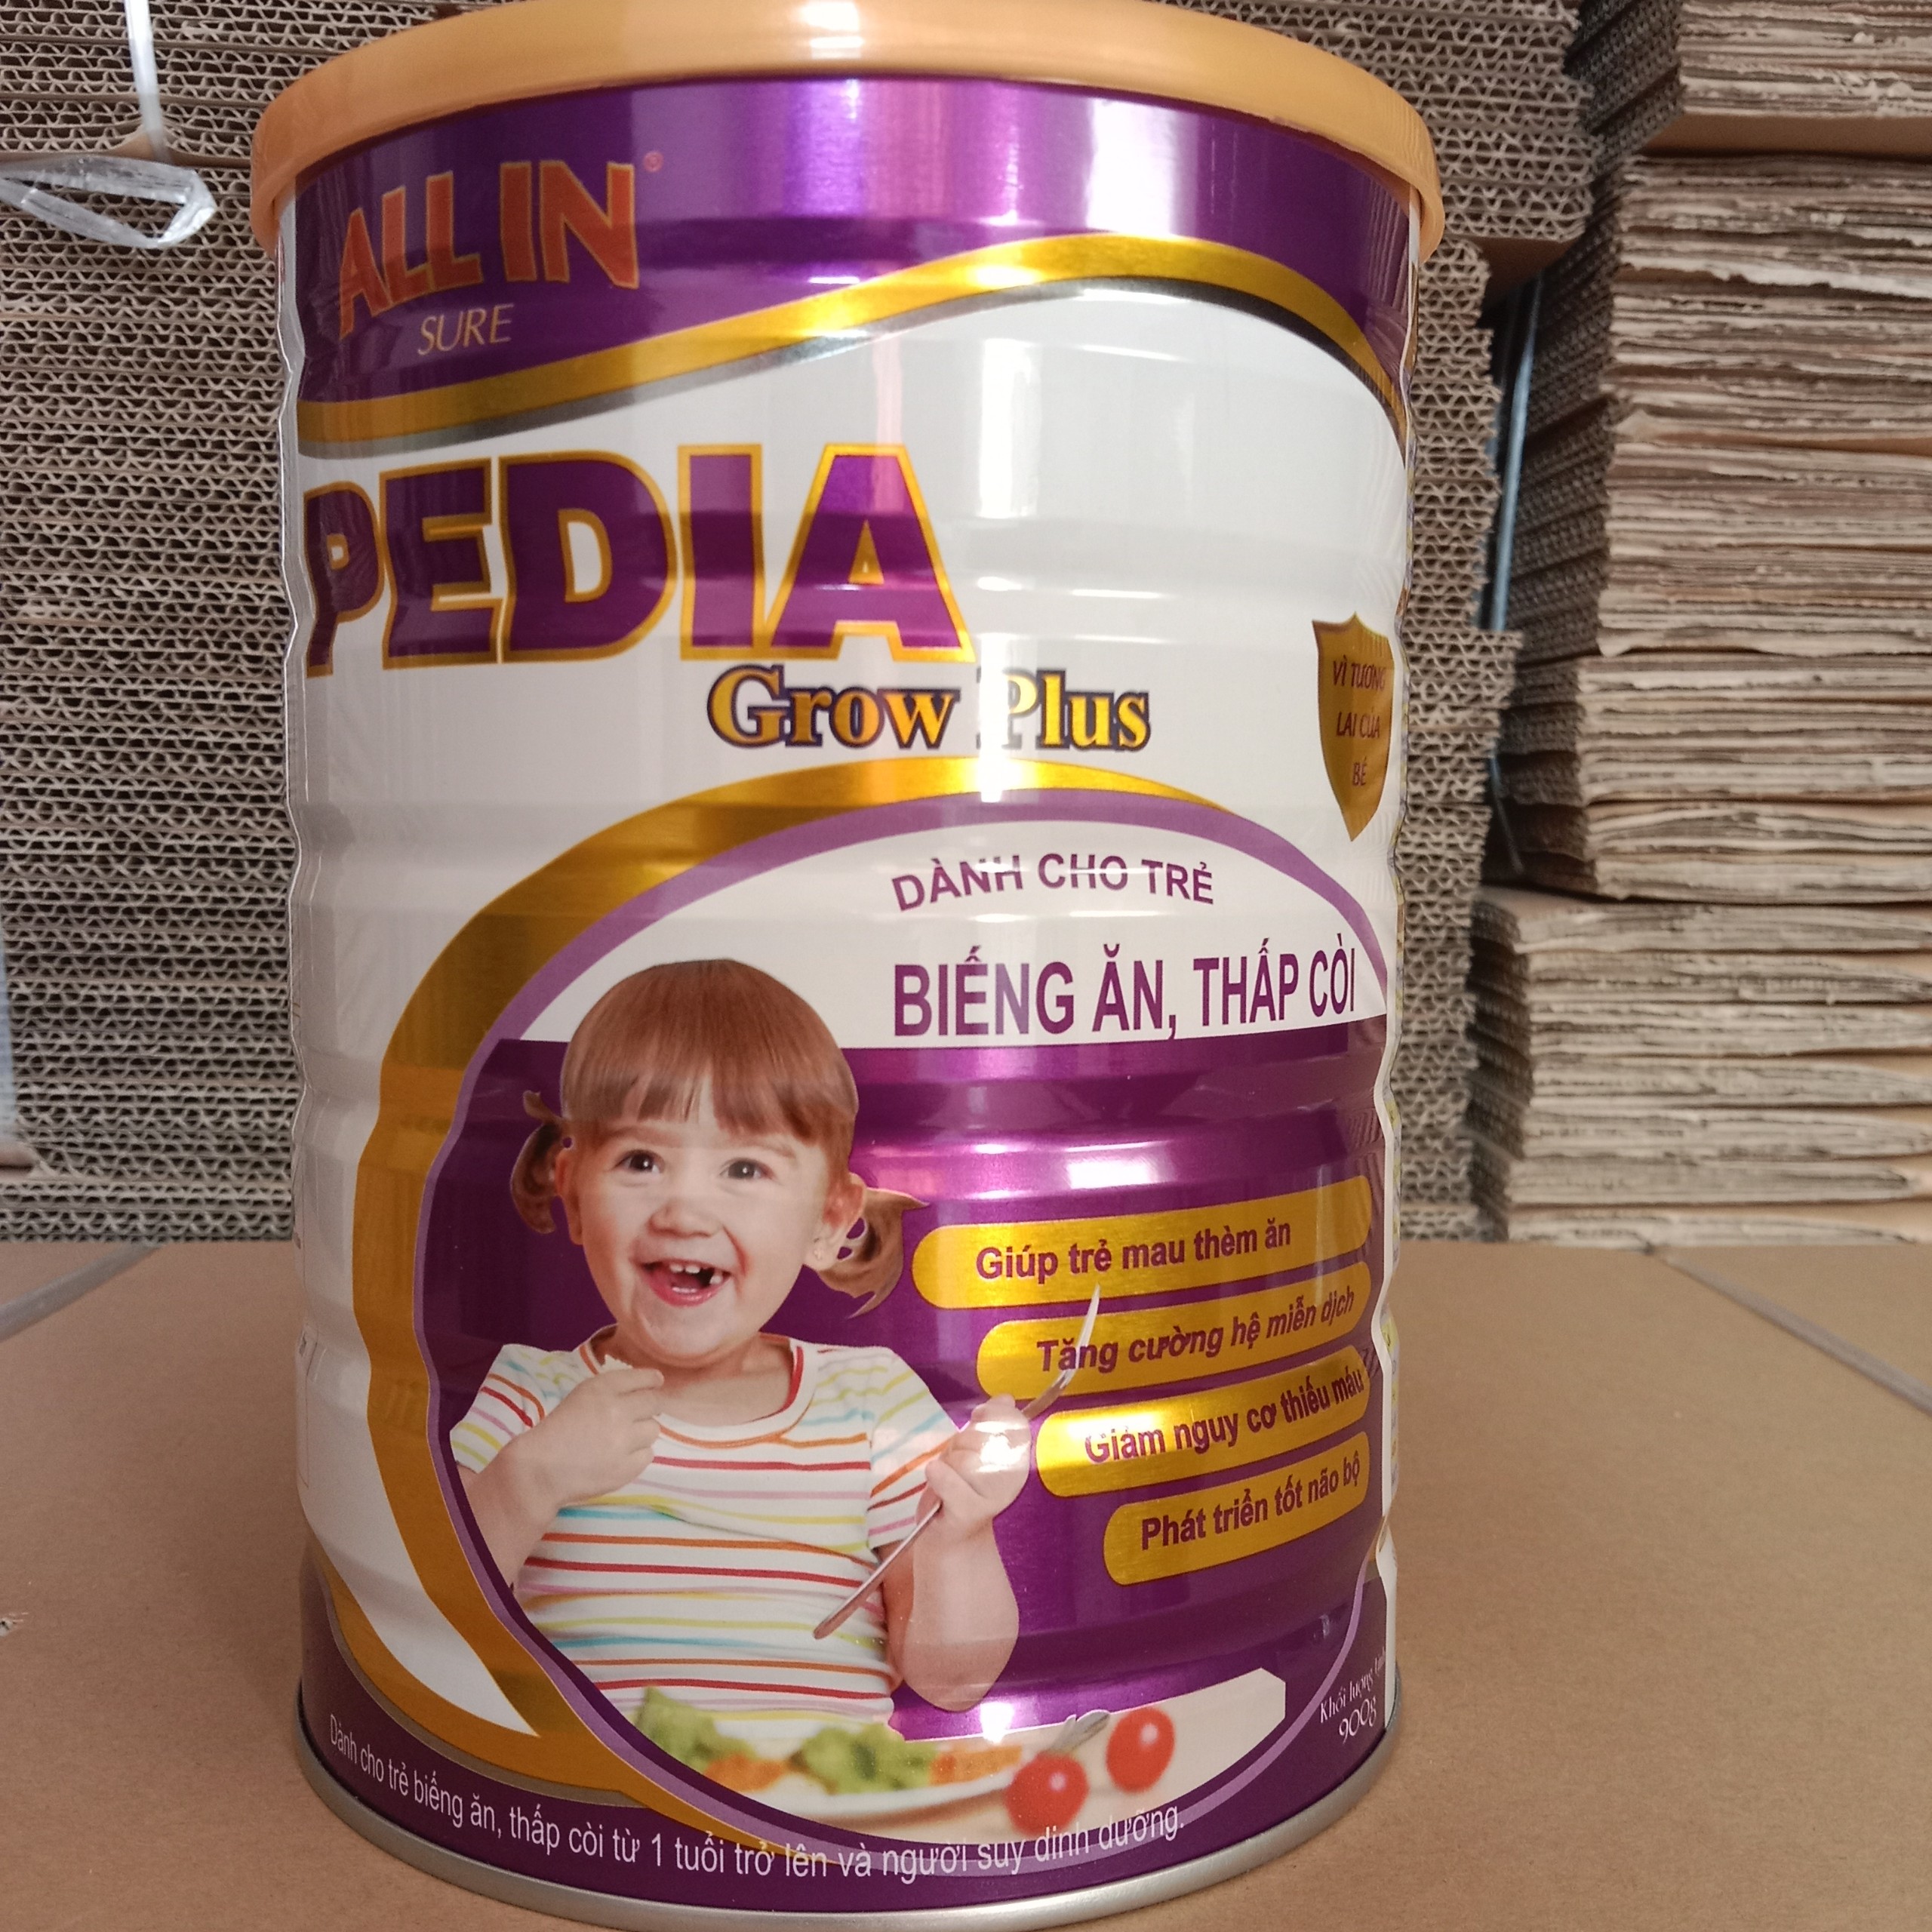 Sữa bột All In Sure Pedia 900g dành cho trẻ suy dinh dưỡng, thấp còi